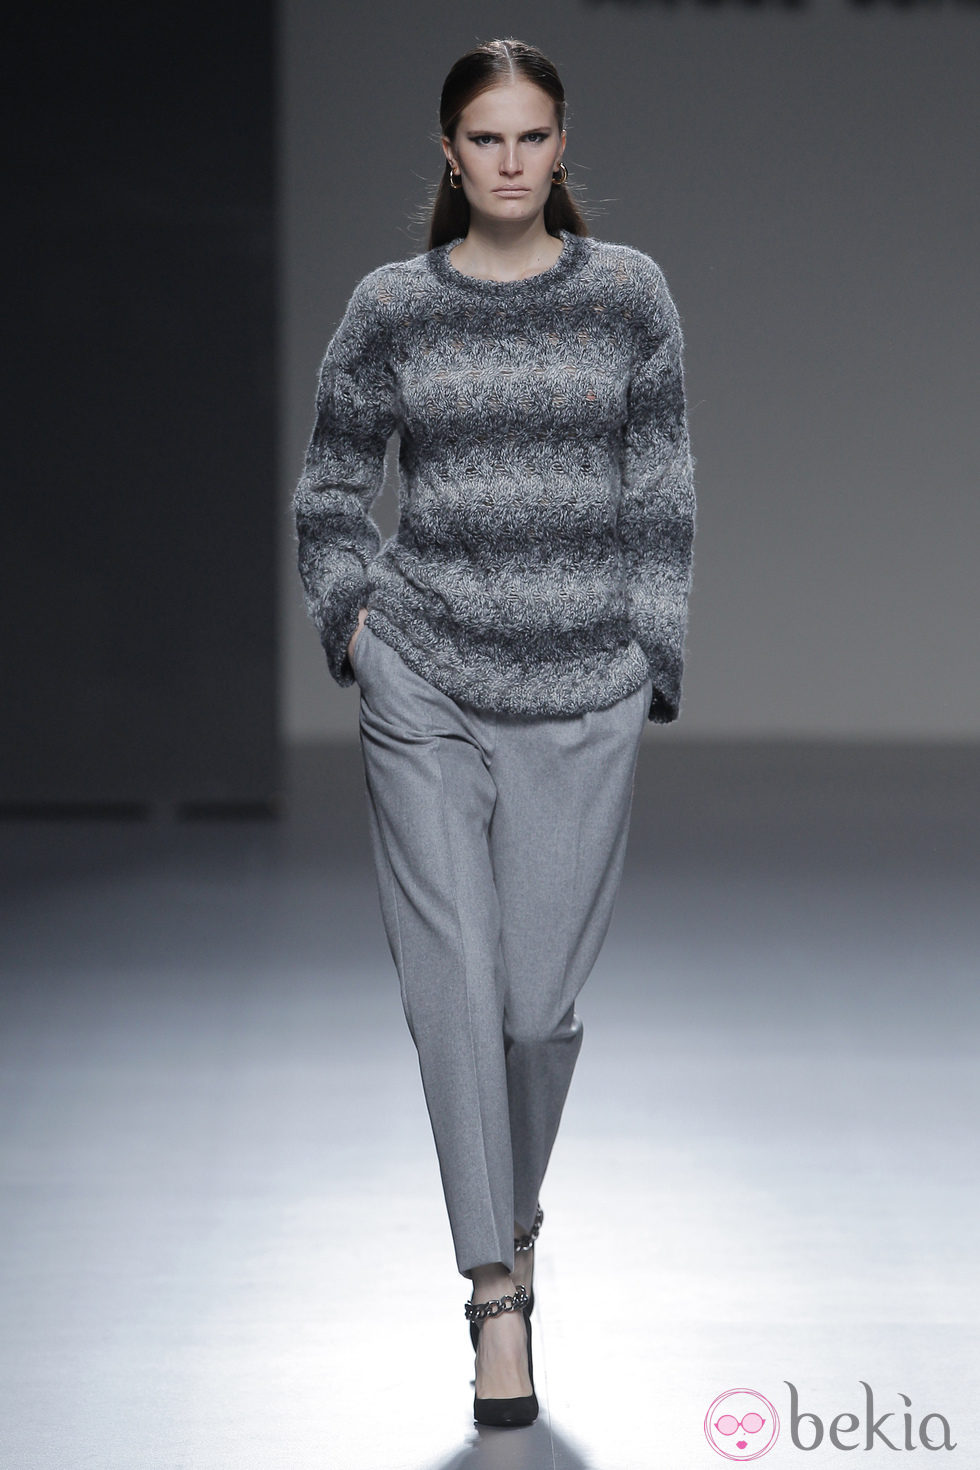 Jersey de rayas grises de la colección otoño/invierno 2013/2014 de Ángel Schlesser en Madrid Fashion Week